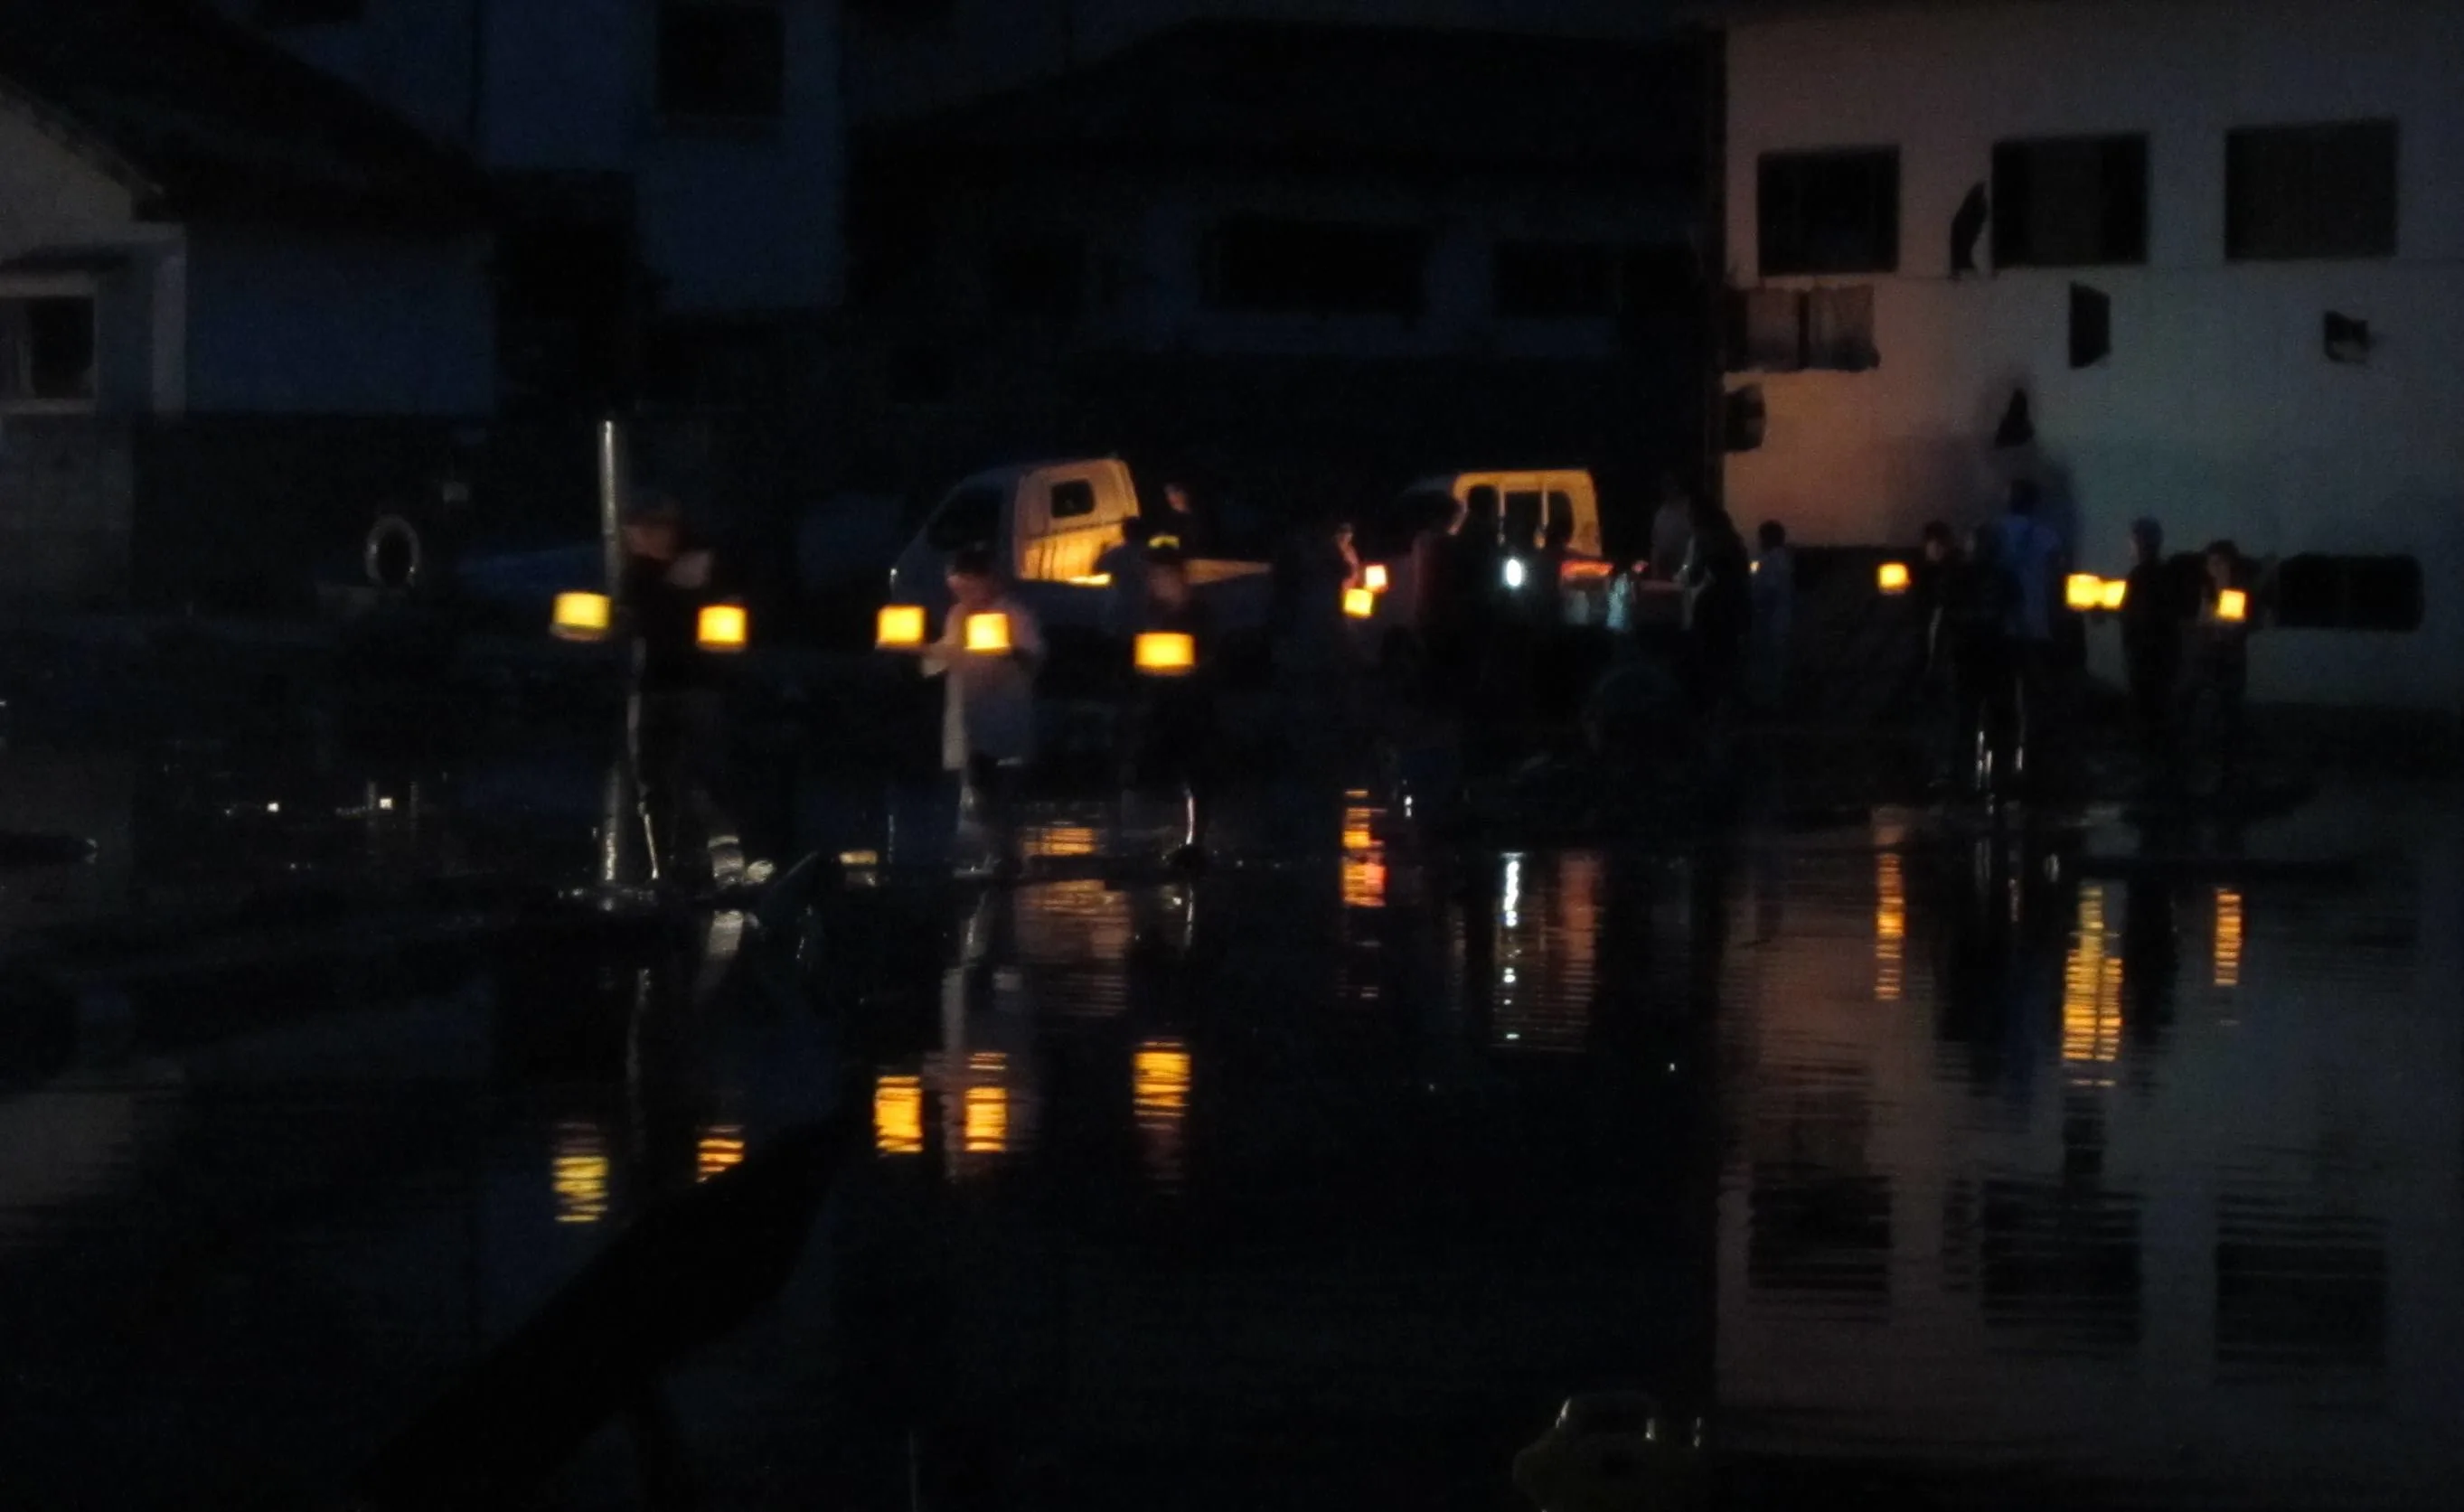 Japan, Ishinomaki, Kobuchihama, Kobuchi-hama, high, tide, tsunami, earthquake, fishing, clean-up, recovery, efforts, 3.11, 2011, March 11, night, dusk, lanterns